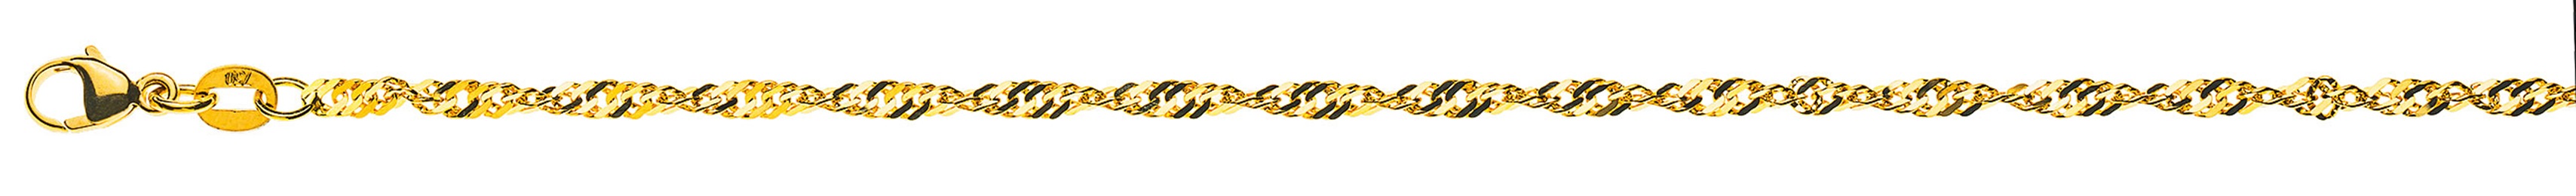 AURONOS Prestige Necklace Yellow Gold 18K Singapore Chain 45cm 2.4mm